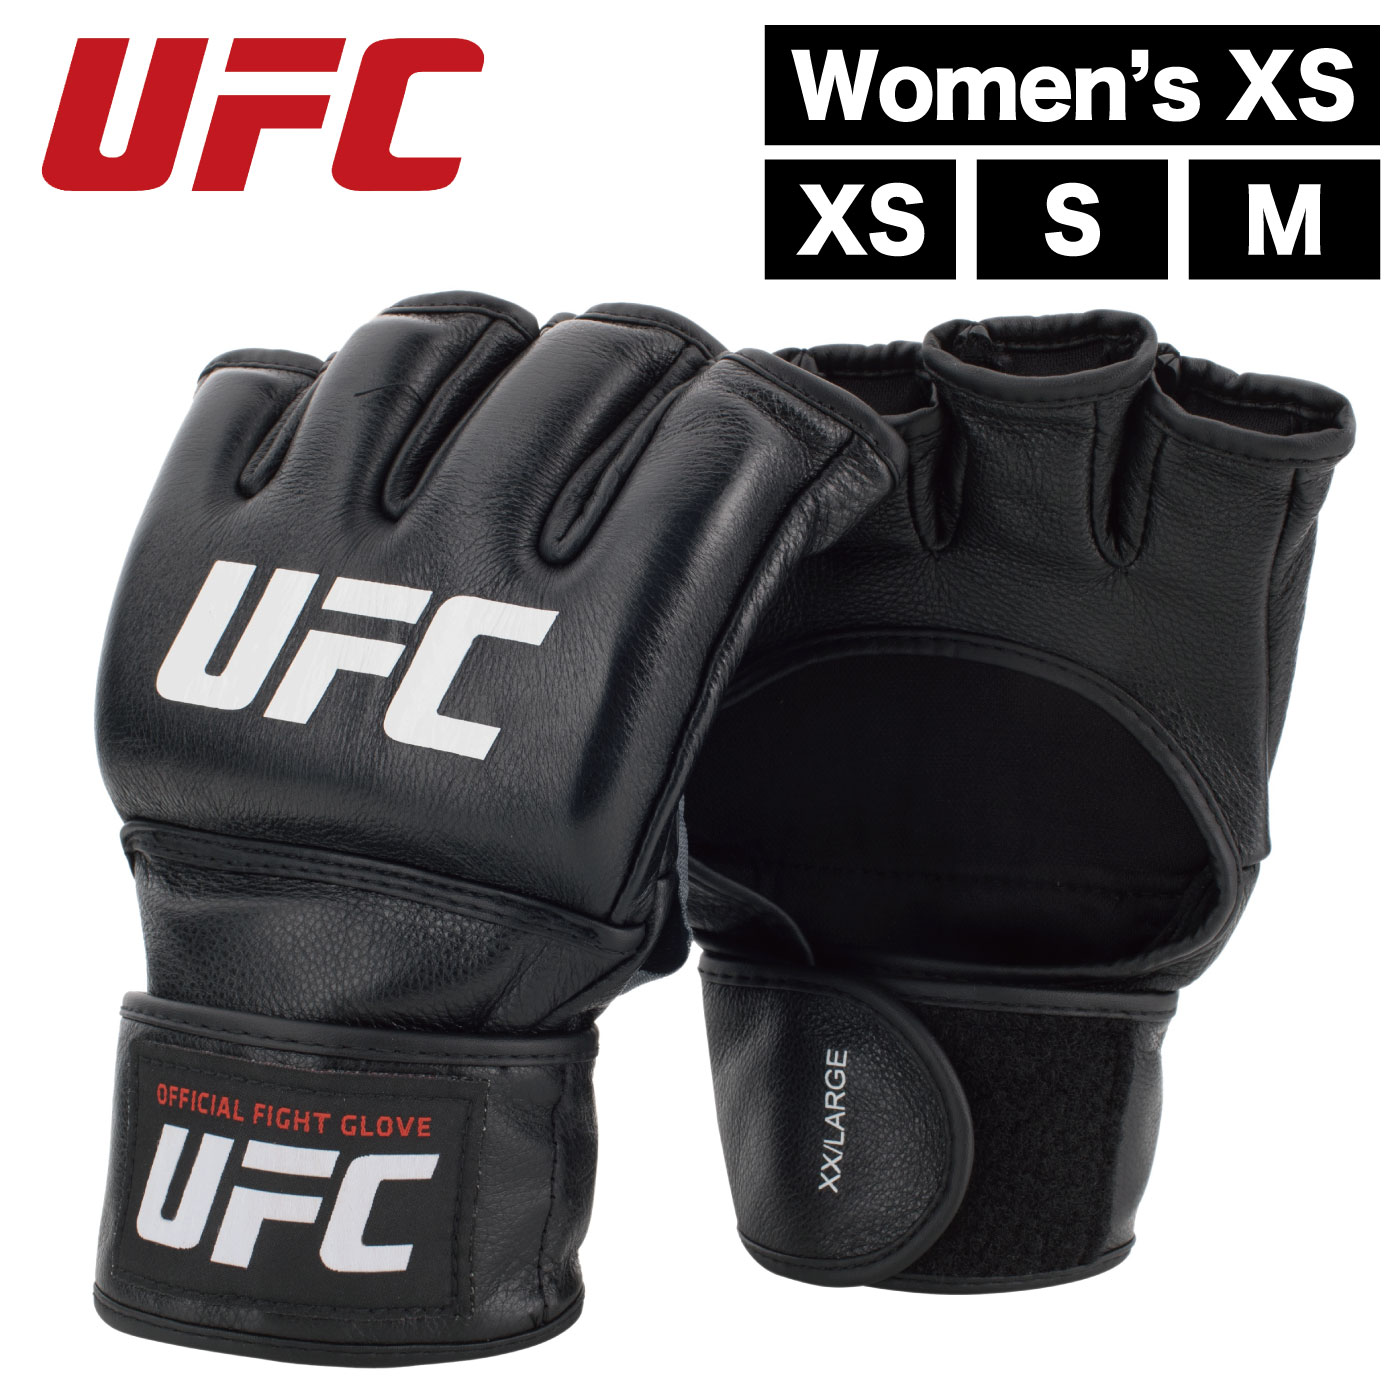 ■商品名：《総合格闘技UFC》オフィシャルファイトグローブ・トレーニンググローブ ■型番：UHK-69906（Women's XS）・UHK-69907（Men's XS）・UHK-69908（Men's S）・UHK-69909（Men's M） ■商品種別：グローブ／トレーニンググローブ ■カテゴリ：スポーツ／トレーニング／総合格闘技 ■商品特徴 ・拳部分はジェルで保護されていて快適です。 ・ぴったりとフィットします。 ・しっかりと手首を支え、拳を保護します。 ・マジックテープの着脱式です。 ・高品質な本革仕様です。 ■スペック ・本体サイズ（約）：サイズにより異なる ・本体重量（約）：サイズにより異なる ・商品材質：本革 ・色：ホワイト／ブラック ■ブランド：UFC ■総合格闘技UFCについて 世界51カ国以上から世界最高峰の選手が参戦し、26カ国153都市以上で大会を開催、156カ国でテレビ放送されている、実力・人気共に世界最大の総合格闘技団体です。 ■販売：アルゴグローバル株式会社 ■備考：当店は総合格闘技UFCの正規販売店です。 ■総合格闘技UFCの取り組み UFCは誰もが認める、世界の総合格闘技における象徴的存在です。 オクタゴンの内と外で優れたパフォーマンスを電撃的に体験することで、ファンとアスリートを鼓舞しています。 私達のビジョンは、世界と象徴するスポーツブランドとなり、すべての人々が、障壁を突破しよう、限界を超えよう、不可能を可能にしよう、という気持ちになるようにすることです。 人類における競争の形を進化させ、UFCをさらに発展させ、その活動の範囲を世界中に広げることが、私達の使命です。 WE ARE MORE THAN THE OCTAGON 関連キーワード（商品の説明ではございません。） UHK-69909 オフィシャルファイトグローブ トレーニンググローブ スパーリンググローブ UFC 総合格闘技 MMA ボクシング 武術 キックボクシング 空手 スポーツ ダイエット エクササイズ トレーニング 運動器具 練習器具 練習用品 打撃練習 トレーニング器具 トレーニング用品 スポーツ 家庭用 室内用 運動不足 有酸素運動 カロリー消費 シェイプアップ リハビリ 筋トレ 筋力アップ【商品説明】 オフィシャルファイトグローブ〈XS〜Mサイズ〉《総合格闘技UFC》 ※別の商品ページにて「Men's L／XL」「Men's XXL／XXXL」がございます。 オフィシャルファイトグローブ〈XS〜Mサイズ〉の特徴 ・拳部分はジェルで保護されていて快適です。 ・ぴったりとフィットします。 ・しっかりと手首を支え、拳を保護します。 ・マジックテープの着脱式です。 ・高品質な本革仕様です。 ※「Men's L／XL」「Men's XXL／XXXL」もございます。 スペック表 製品名《総合格闘技UFC》オフィシャルファイトグローブ 型番UHK-69906（Women's XS）・UHK-69907（Men's XS）・UHK-69908（Men's S）・UHK-69909（Men's M） 製品種別グローブ／トレーニンググローブ カテゴリスポーツ／トレーニング／総合格闘技 本体サイズ（約）サイズにより異なる 本体重量（約）サイズにより異なる 商品材質本革 色ホワイト／ブラック ブランドUFC UFCとは 世界51カ国以上から世界最高峰の選手が参戦し、26カ国153都市以上で大会を開催、156カ国でテレビ放送されている、 実力・人気共に世界最大の総合格闘技団体 UFCの取り組み UFCは誰もが認める、世界の総合格闘技における象徴的存在です。 オクタゴンの内と外で優れたパフォーマンスを電撃的に体験することで、ファンとアスリートを鼓舞しています。 私達のビジョンは、世界と象徴するスポーツブランドとなり、すべての人々が、障壁を突破しよう、限界を超えよう、不可能を可能にしよう、という気持ちになるようにすることです。 注意事項 ※サイズ・重量には多少の誤差が生じる場合がございます。 ※お使いのモニター環境などにより、掲載画像と実際の商品の色味が若干異なる場合がございます。 ※多少の傷・汚れ等がある場合がございます。 ※製品仕様は予告なく変更される場合がございます。 ■商品名：《総合格闘技UFC》オフィシャルファイトグローブ・トレーニンググローブ ■型番：UHK-69906（Women's XS）・UHK-69907（Men's XS）・UHK-69908（Men's S）・UHK-69909（Men's M） ■商品種別：グローブ／トレーニンググローブ ■カテゴリ：スポーツ／トレーニング／総合格闘技 ■商品特徴 ・拳部分はジェルで保護されていて快適です。 ・ぴったりとフィットします。 ・しっかりと手首を支え、拳を保護します。 ・マジックテープの着脱式です。 ・高品質な本革仕様です。 ■スペック ・本体サイズ（約）：サイズにより異なる ・本体重量（約）：サイズにより異なる ・商品材質：本革 ・色：ホワイト／ブラック ■ブランド：UFC ■総合格闘技UFCについて 世界51カ国以上から世界最高峰の選手が参戦し、26カ国153都市以上で大会を開催、156カ国でテレビ放送されている、実力・人気共に世界最大の総合格闘技団体です。 ■販売：アルゴグローバル株式会社 ■備考：当店は総合格闘技UFCの正規販売店です。 ■総合格闘技UFCの取り組み UFCは誰もが認める、世界の総合格闘技における象徴的存在です。 オクタゴンの内と外で優れたパフォーマンスを電撃的に体験することで、ファンとアスリートを鼓舞しています。 私達のビジョンは、世界と象徴するスポーツブランドとなり、すべての人々が、障壁を突破しよう、限界を超えよう、不可能を可能にしよう、という気持ちになるようにすることです。 人類における競争の形を進化させ、UFCをさらに発展させ、その活動の範囲を世界中に広げることが、私達の使命です。 WE ARE MORE THAN THE OCTAGON 関連キーワード（商品の説明ではございません。） UHK-69909 オフィシャルファイトグローブ トレーニンググローブ スパーリンググローブ UFC 総合格闘技 MMA ボクシング 武術 キックボクシング 空手 スポーツ ダイエット エクササイズ トレーニング 運動器具 練習器具 練習用品 打撃練習 トレーニング器具 トレーニング用品 スポーツ 家庭用 室内用 運動不足 有酸素運動 カロリー消費 シェイプアップ リハビリ 筋トレ 筋力アップ